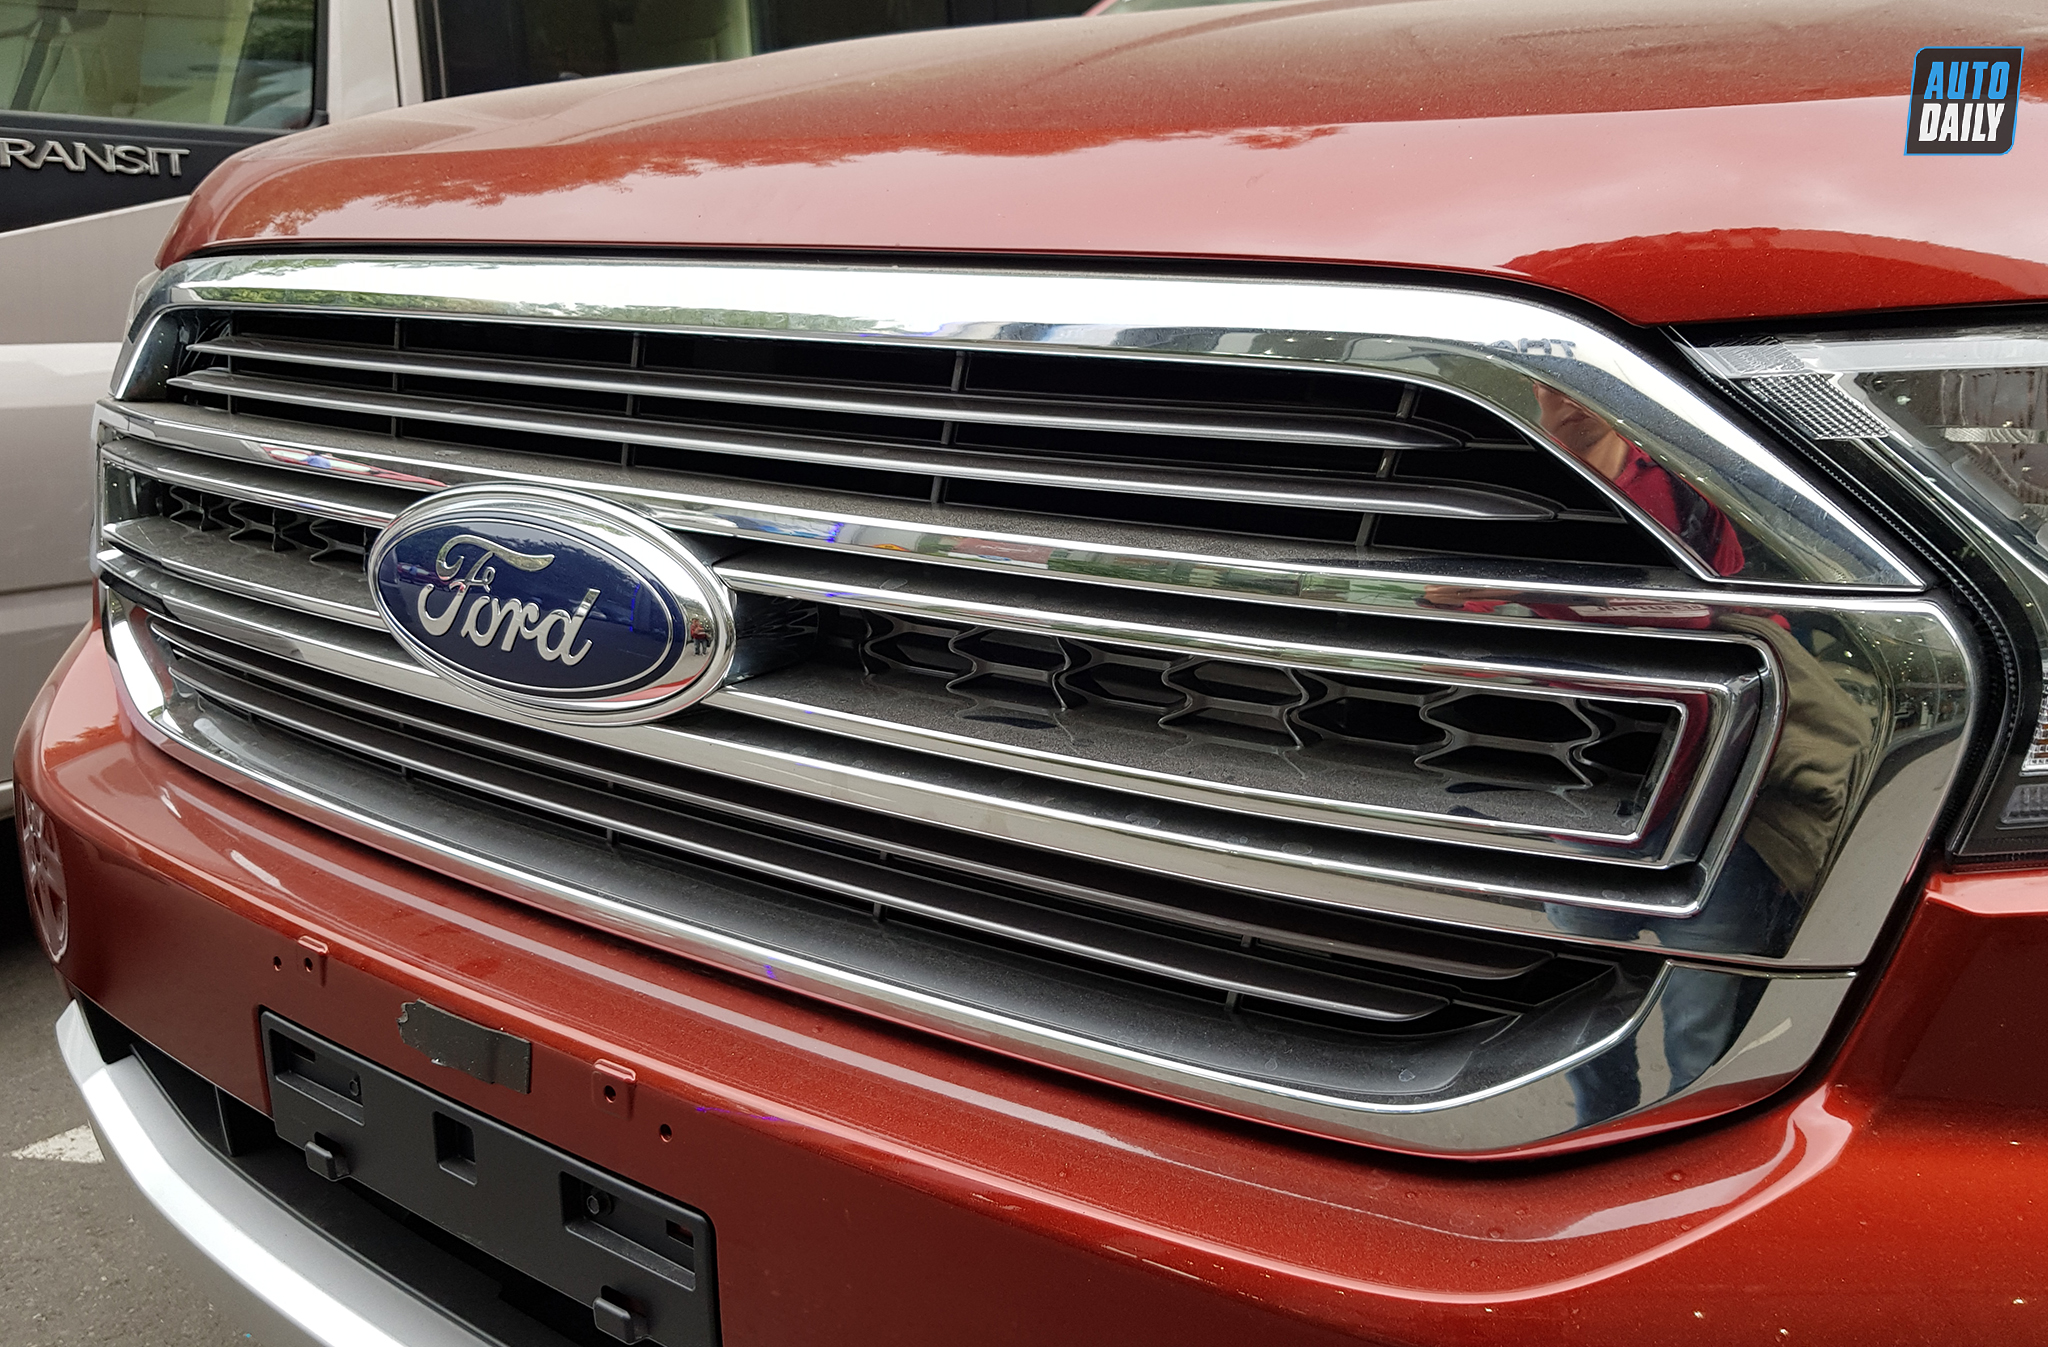 Ford Ranger 2021 về đại lý, giá từ 616 triệu đồng ford-ranger-30.jpg